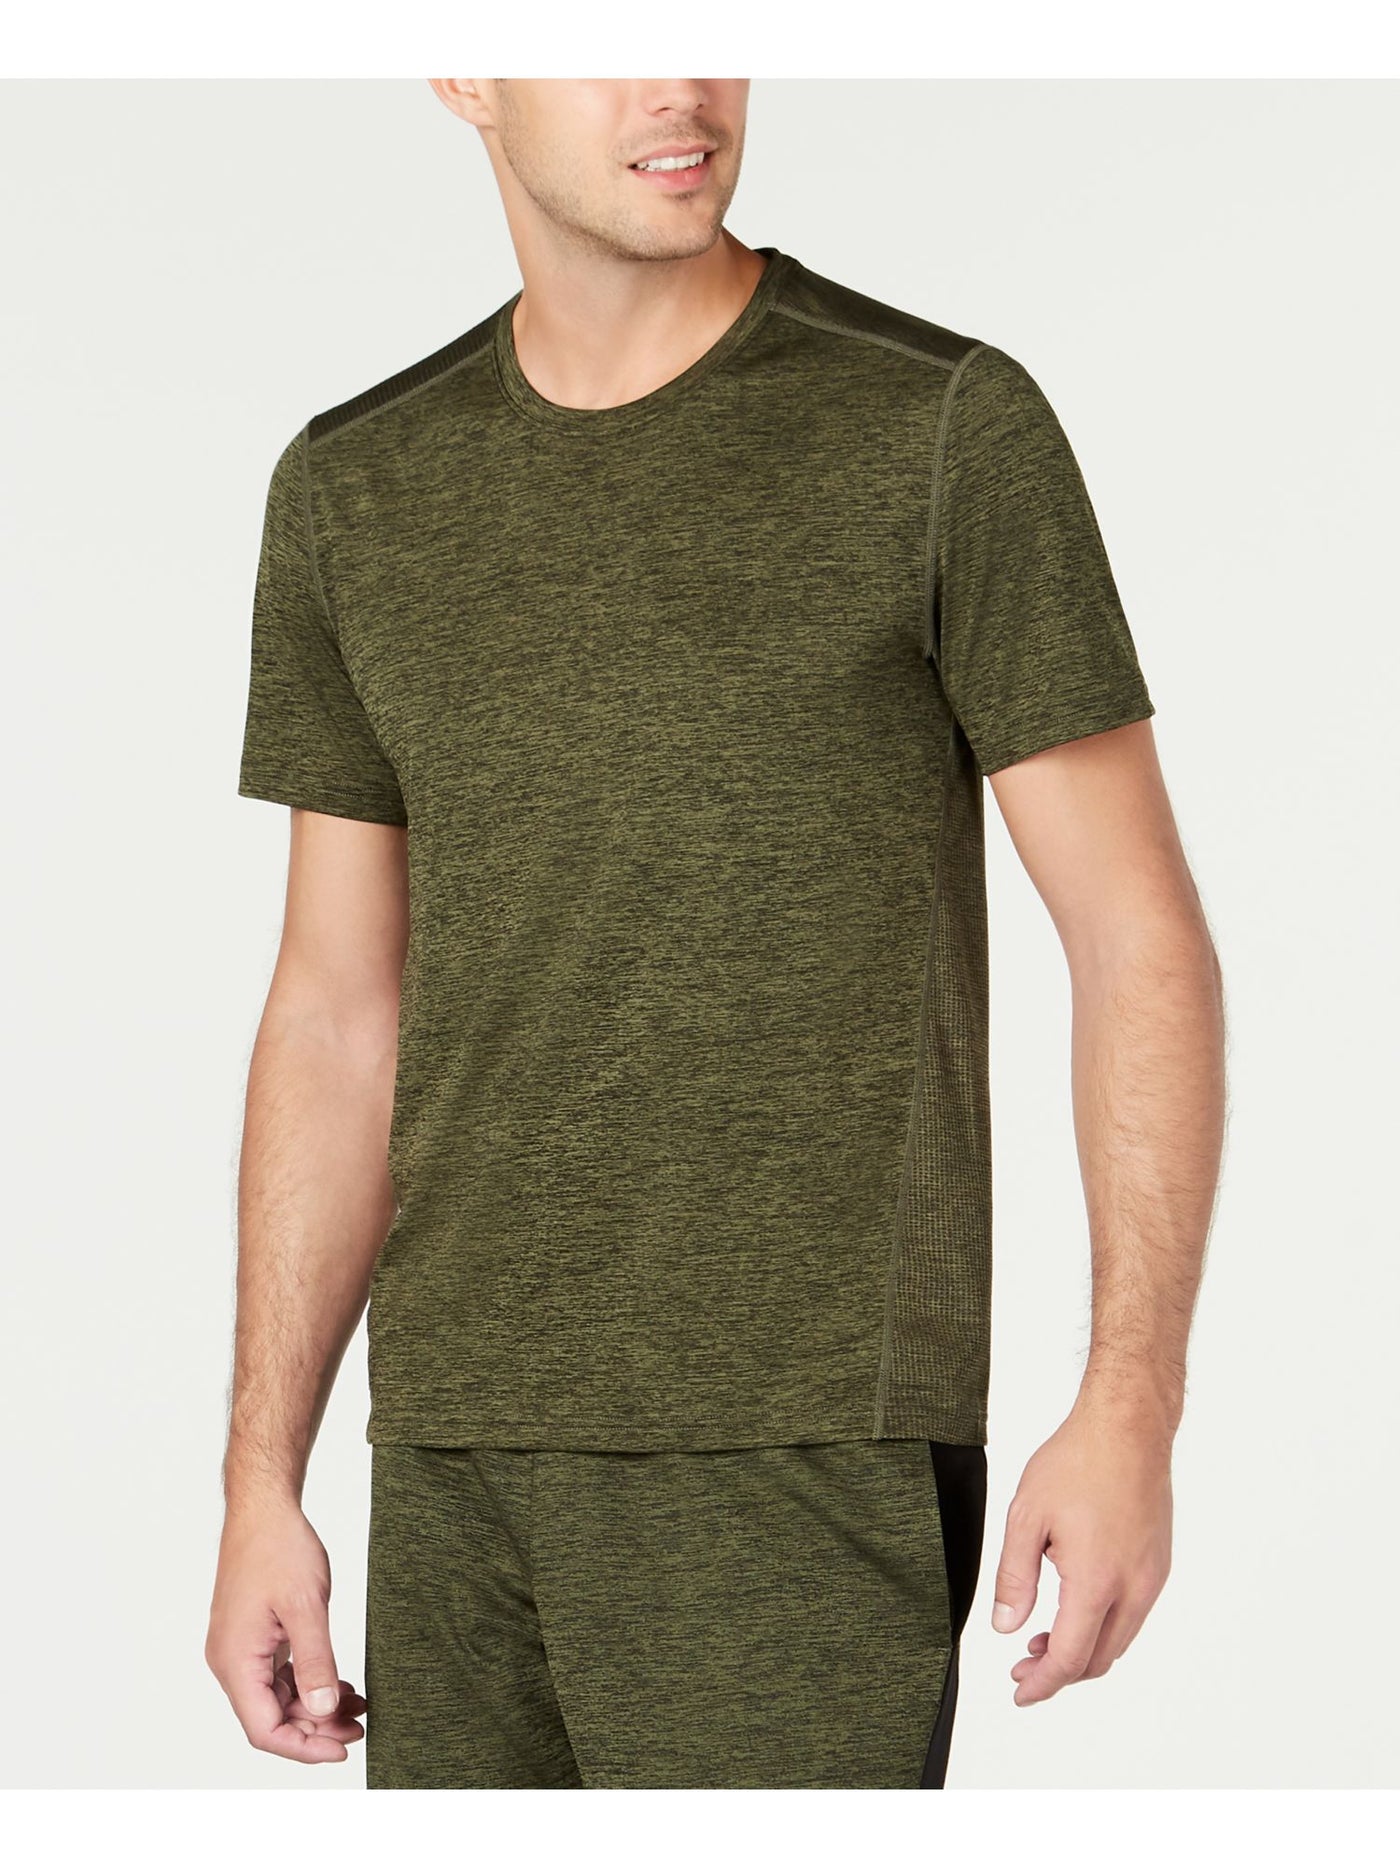 IDEOLOGY Mens Green Lightweight Short Sleeve Classic Fit T-Shirt S